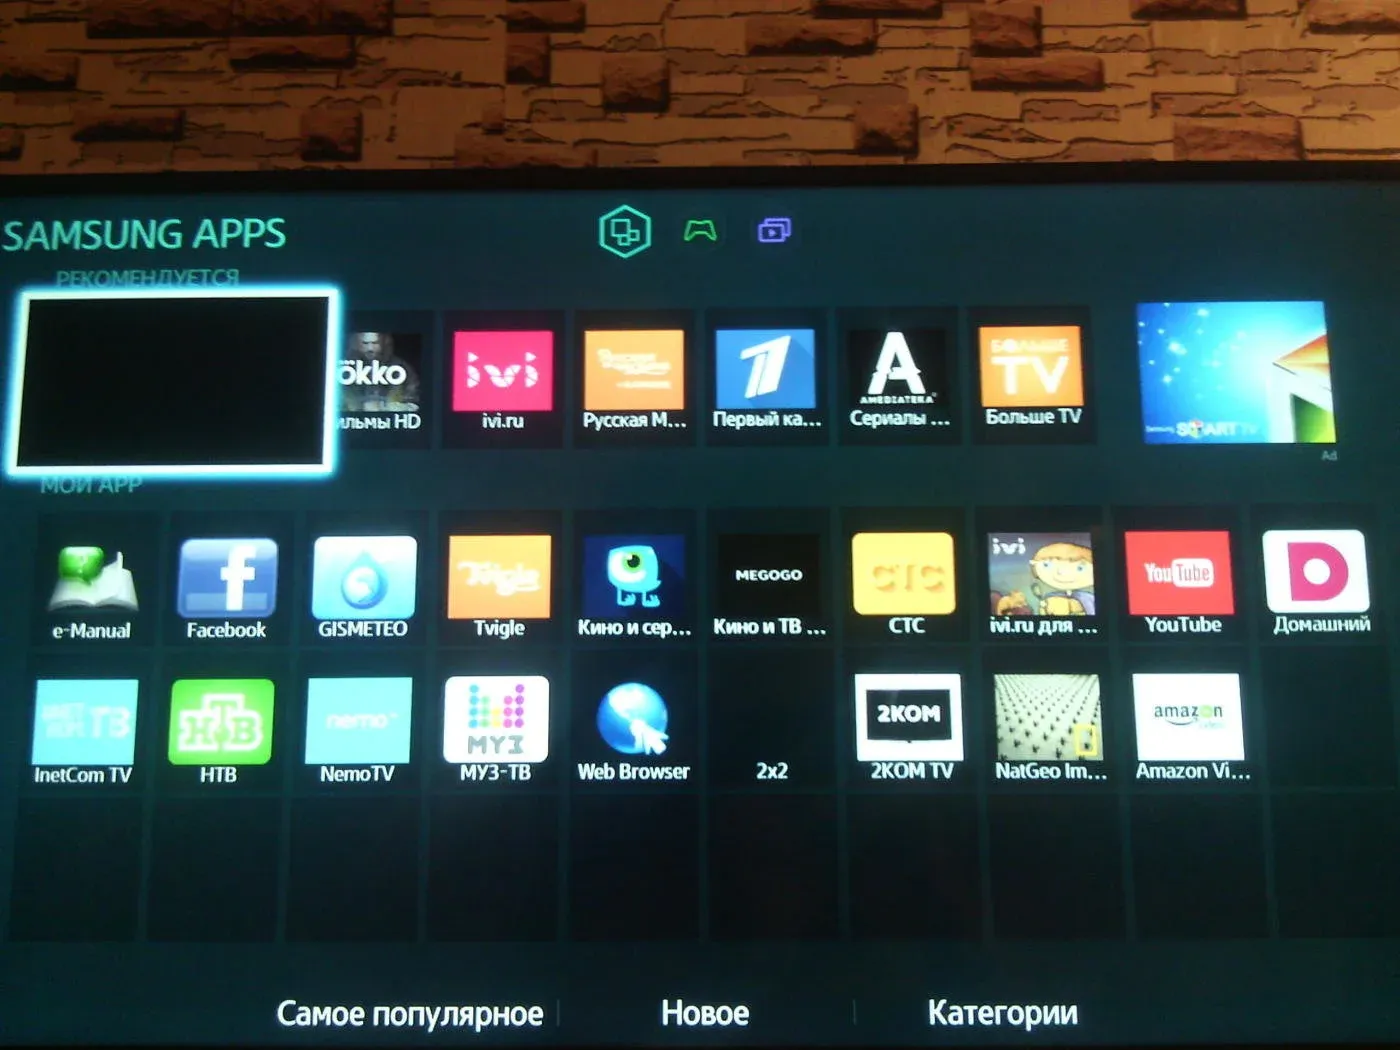 Тв приложение для телевизора самсунг. Смарт ТВ Samsung. Экран смарт ТВ самсунг. Самсунге смарте ТВ. Samsung apps для телевизора Smart TV.